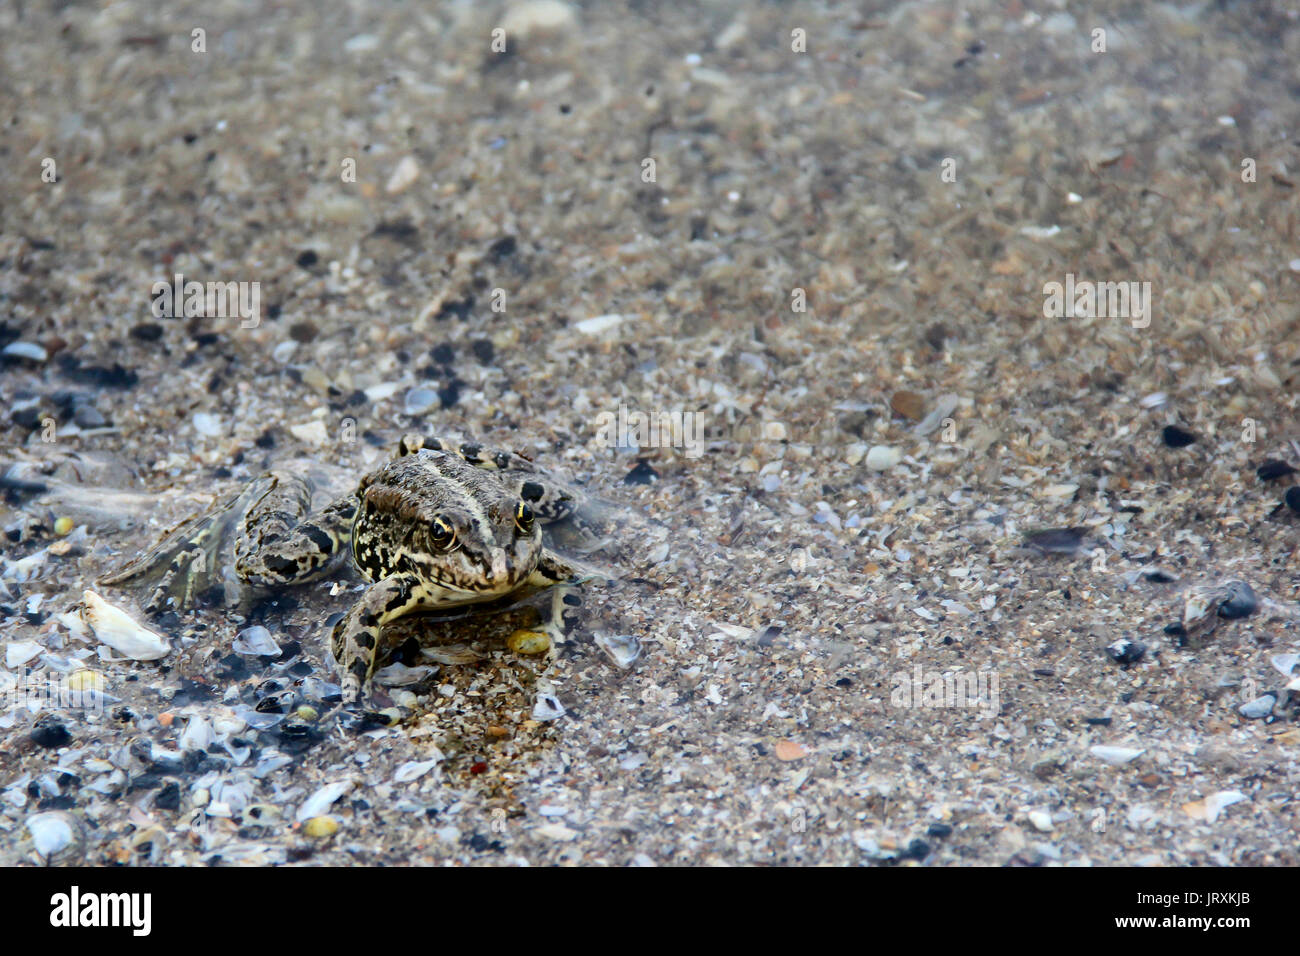 grenouille flottant sur l'eau. photo. Banque D'Images